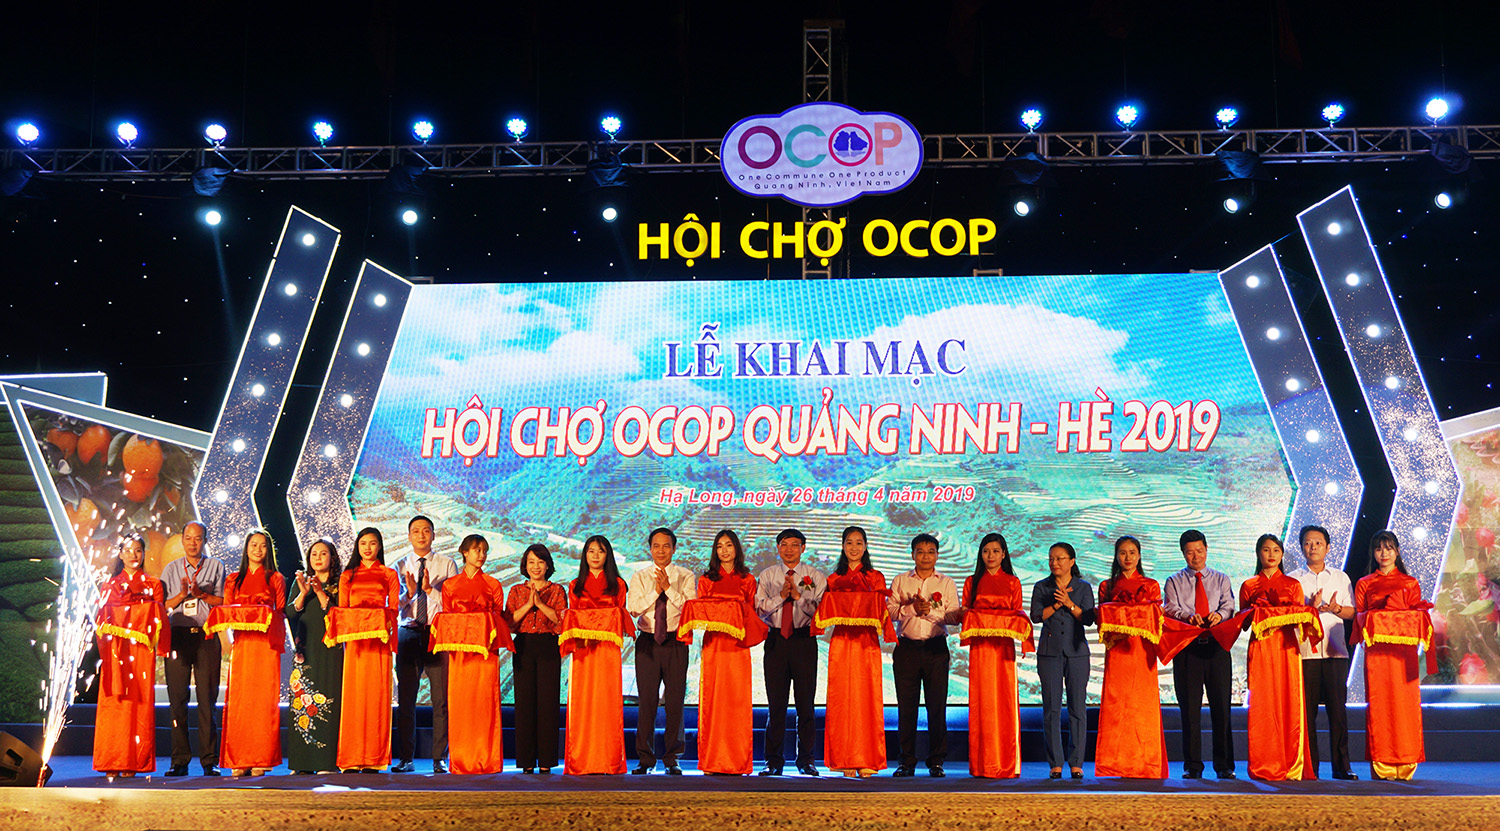 Các đại biểu cắt băng khai mạc Hội chợ OCOP Quảng Ninh - Hè 2019.